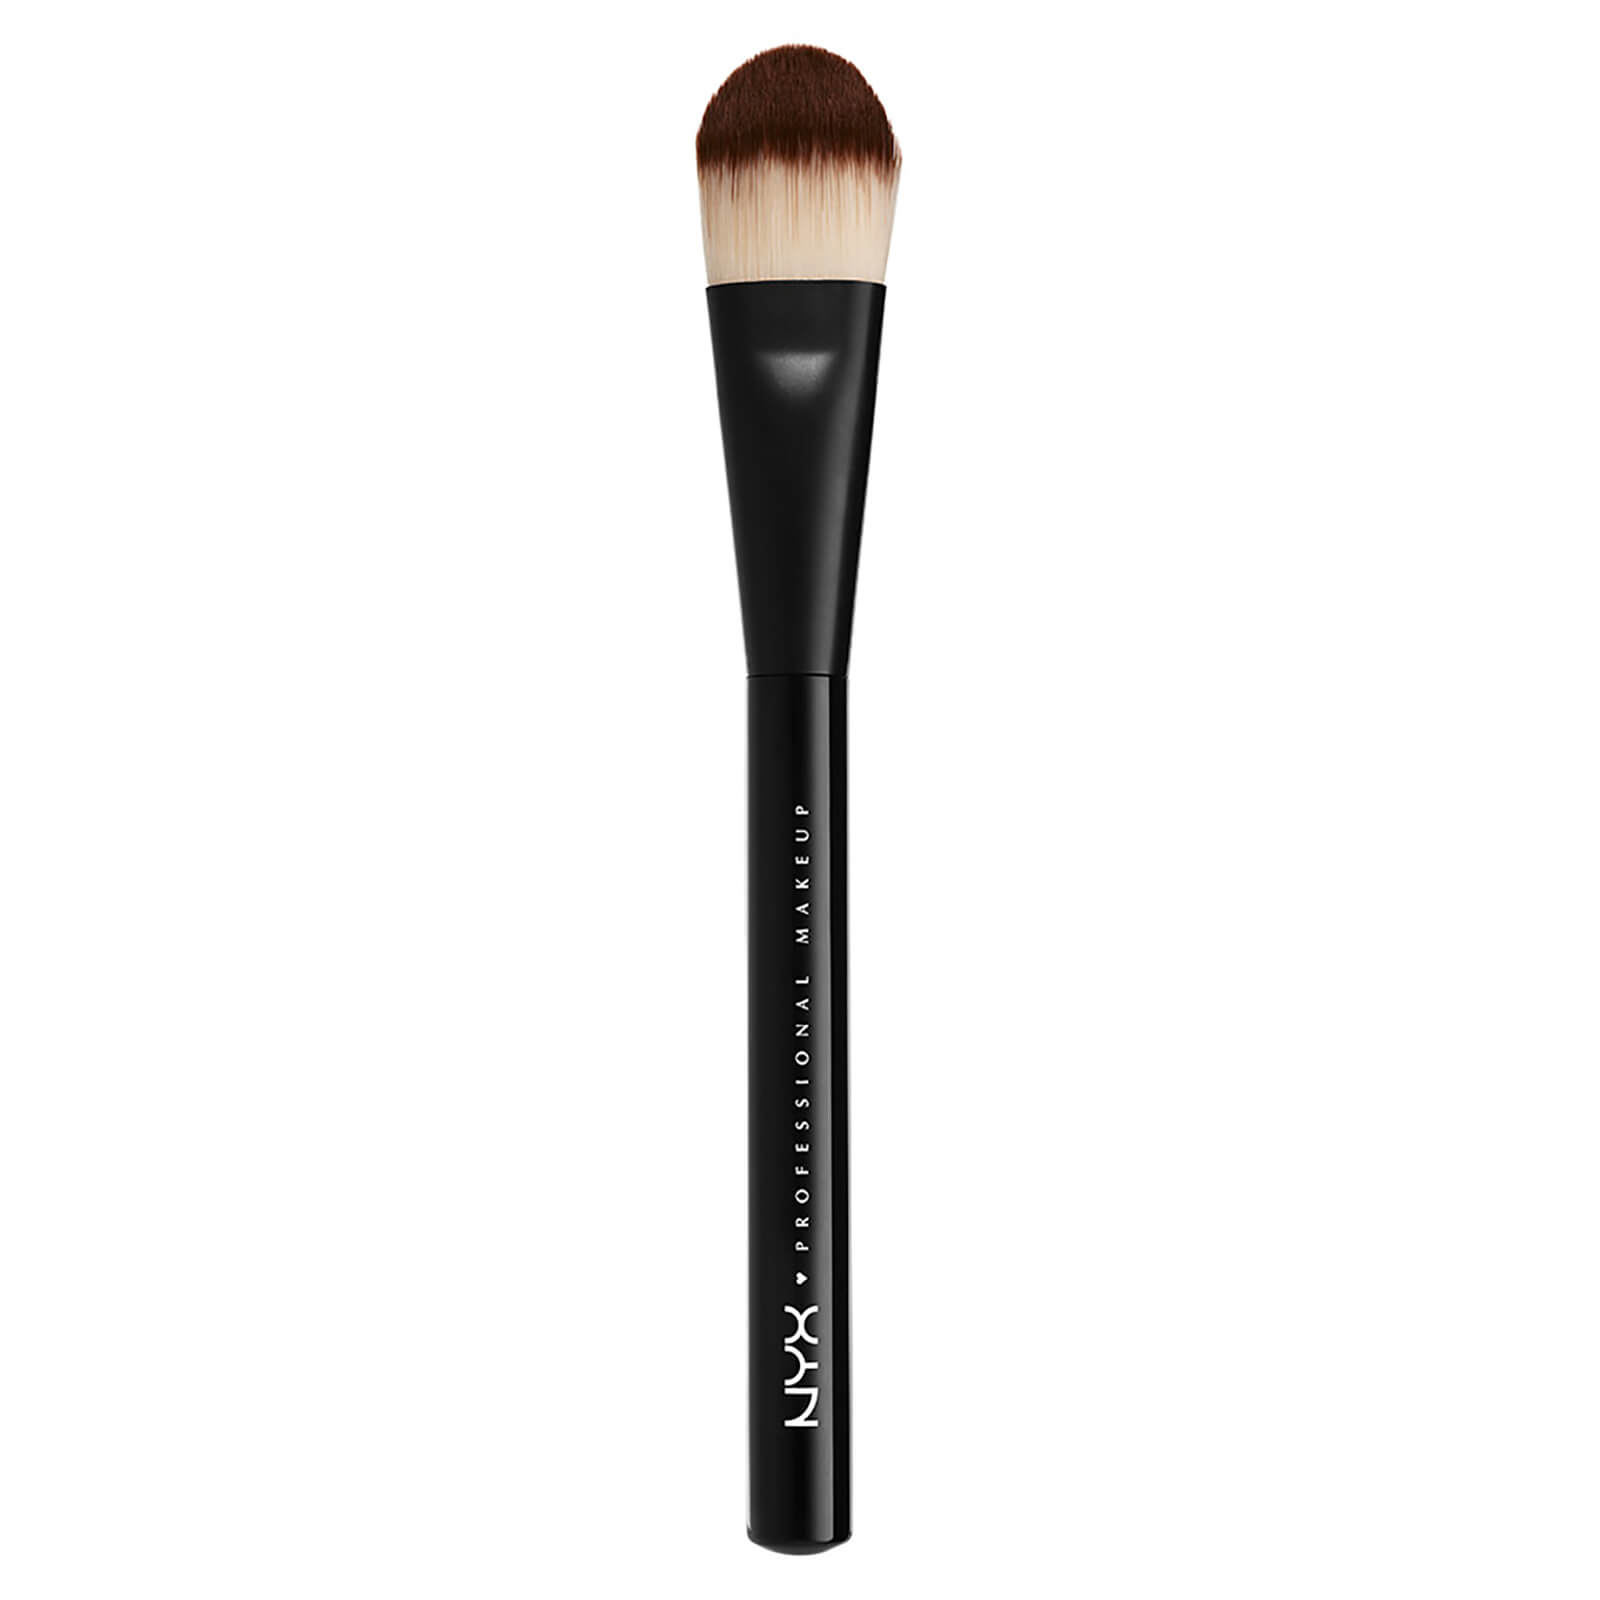 Image of NYX Professional Makeup Pro Flat Foundation Brush